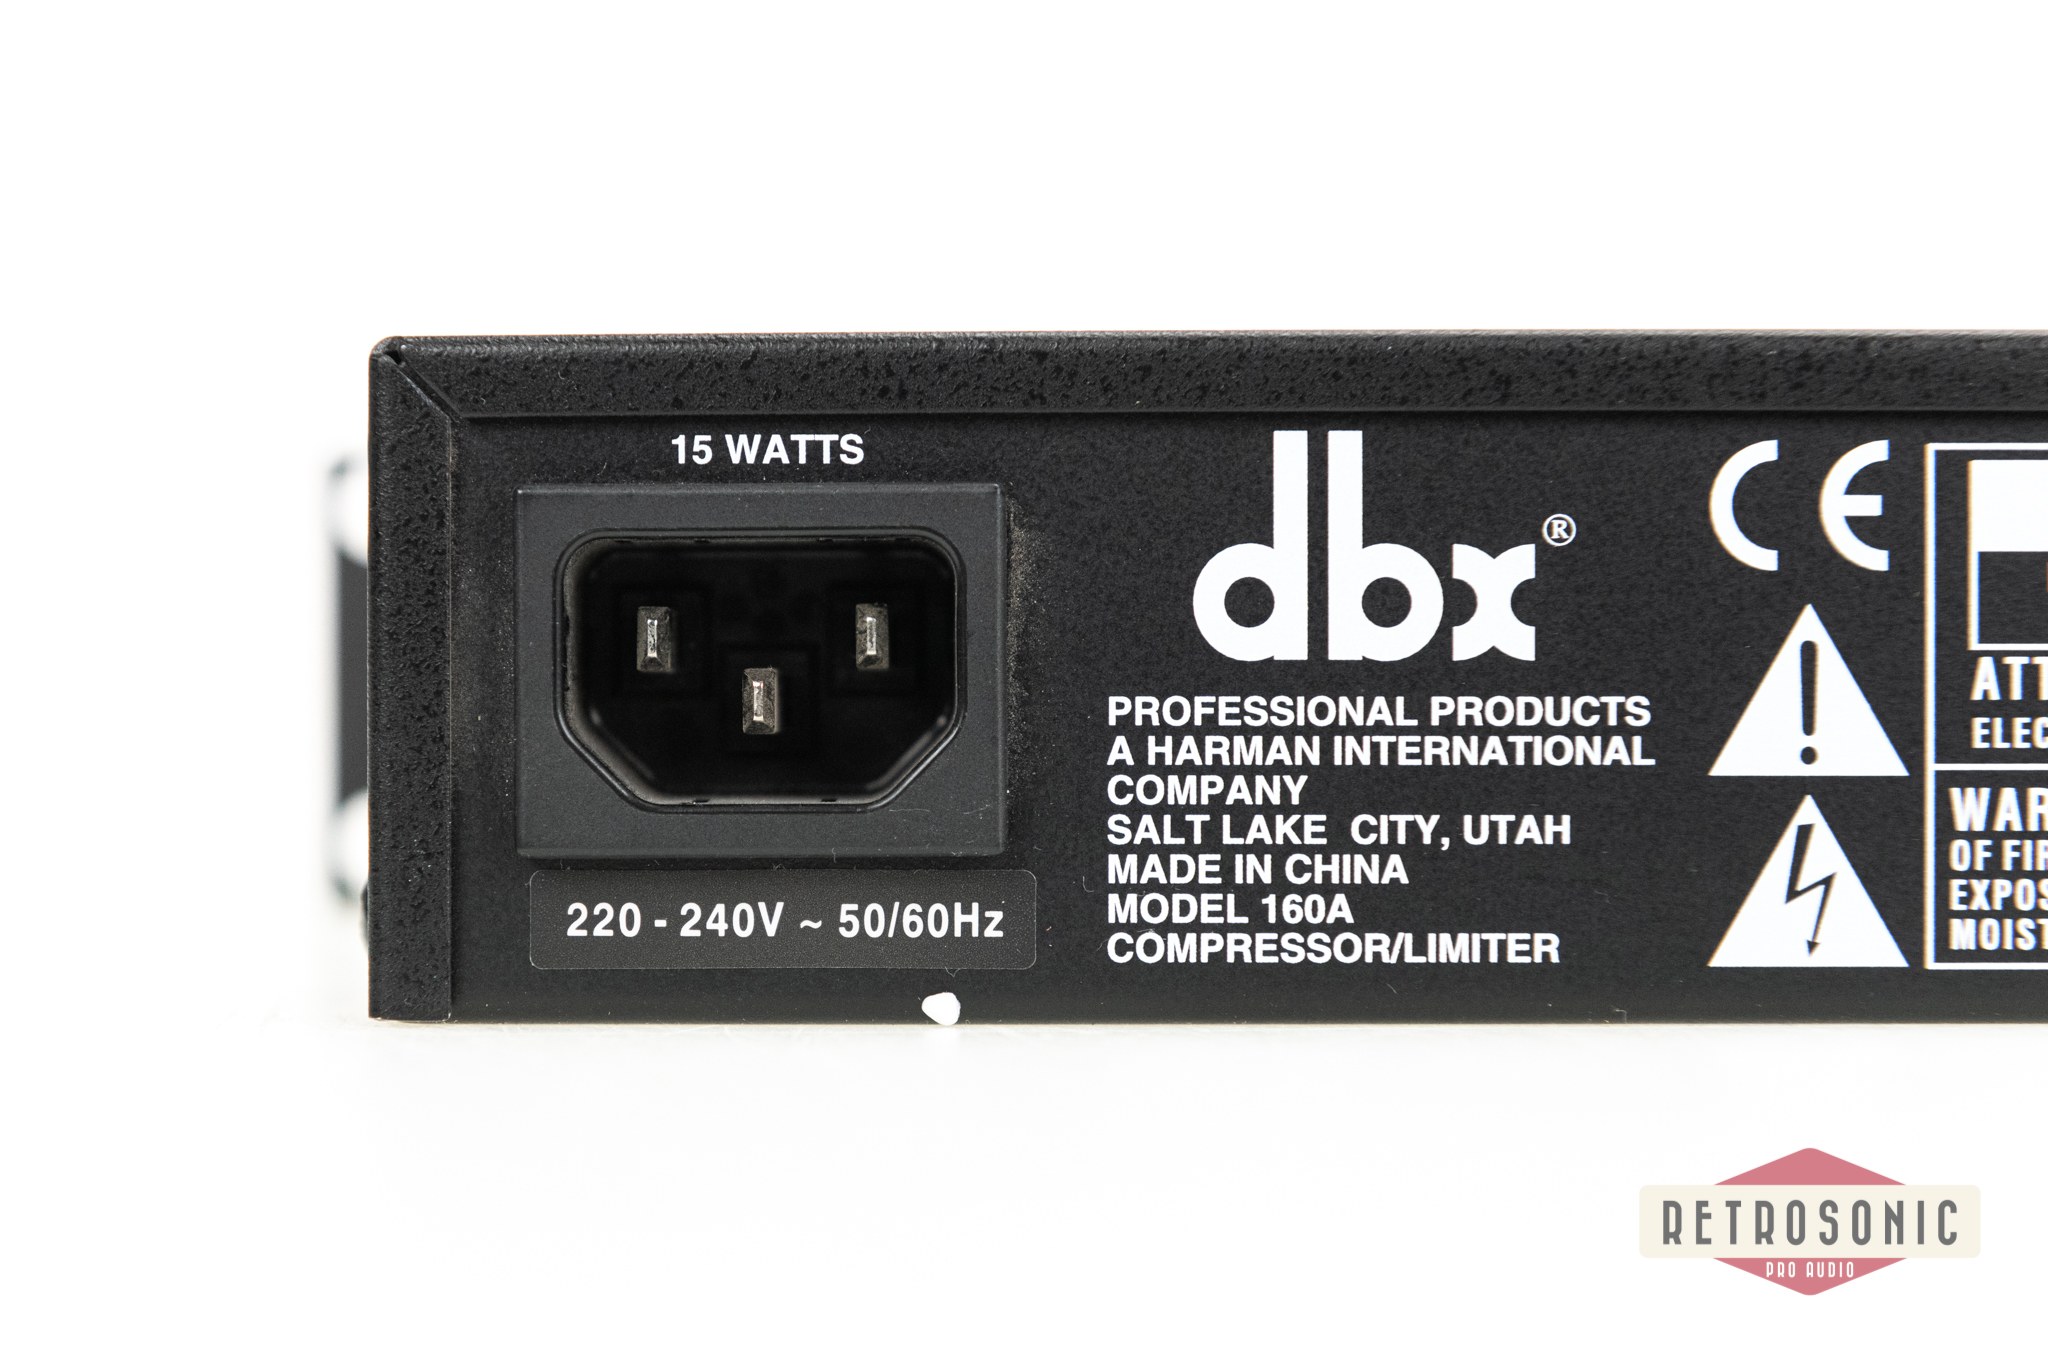 dbx 160A Compressor Limiter #01012403